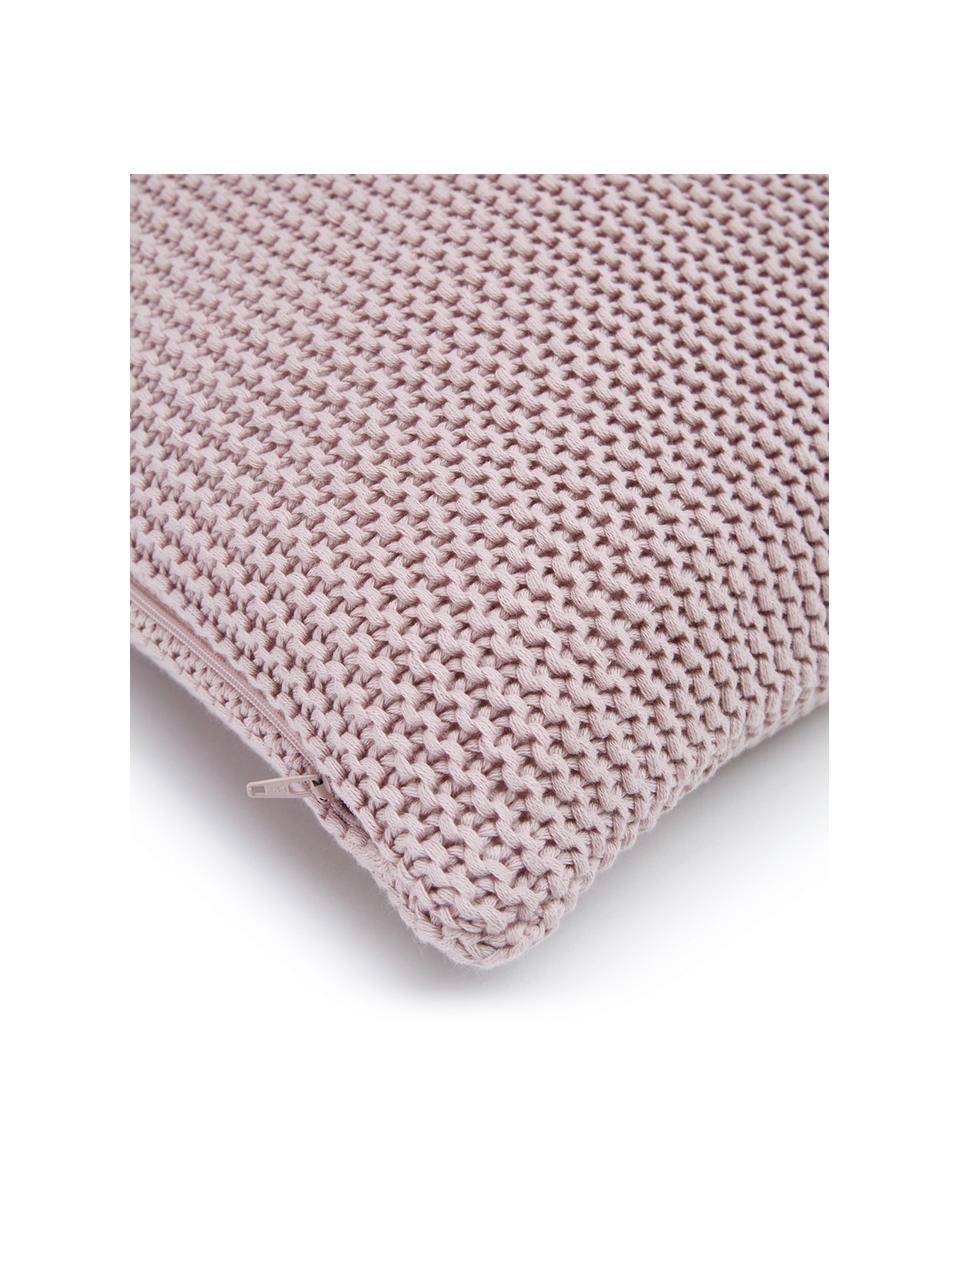 Federa arredo a maglia in cotone organico rosa cipria Adalyn, 100% cotone organico certificato GOTS, Rosa cipria, Larg. 30 x Lung. 50 cm